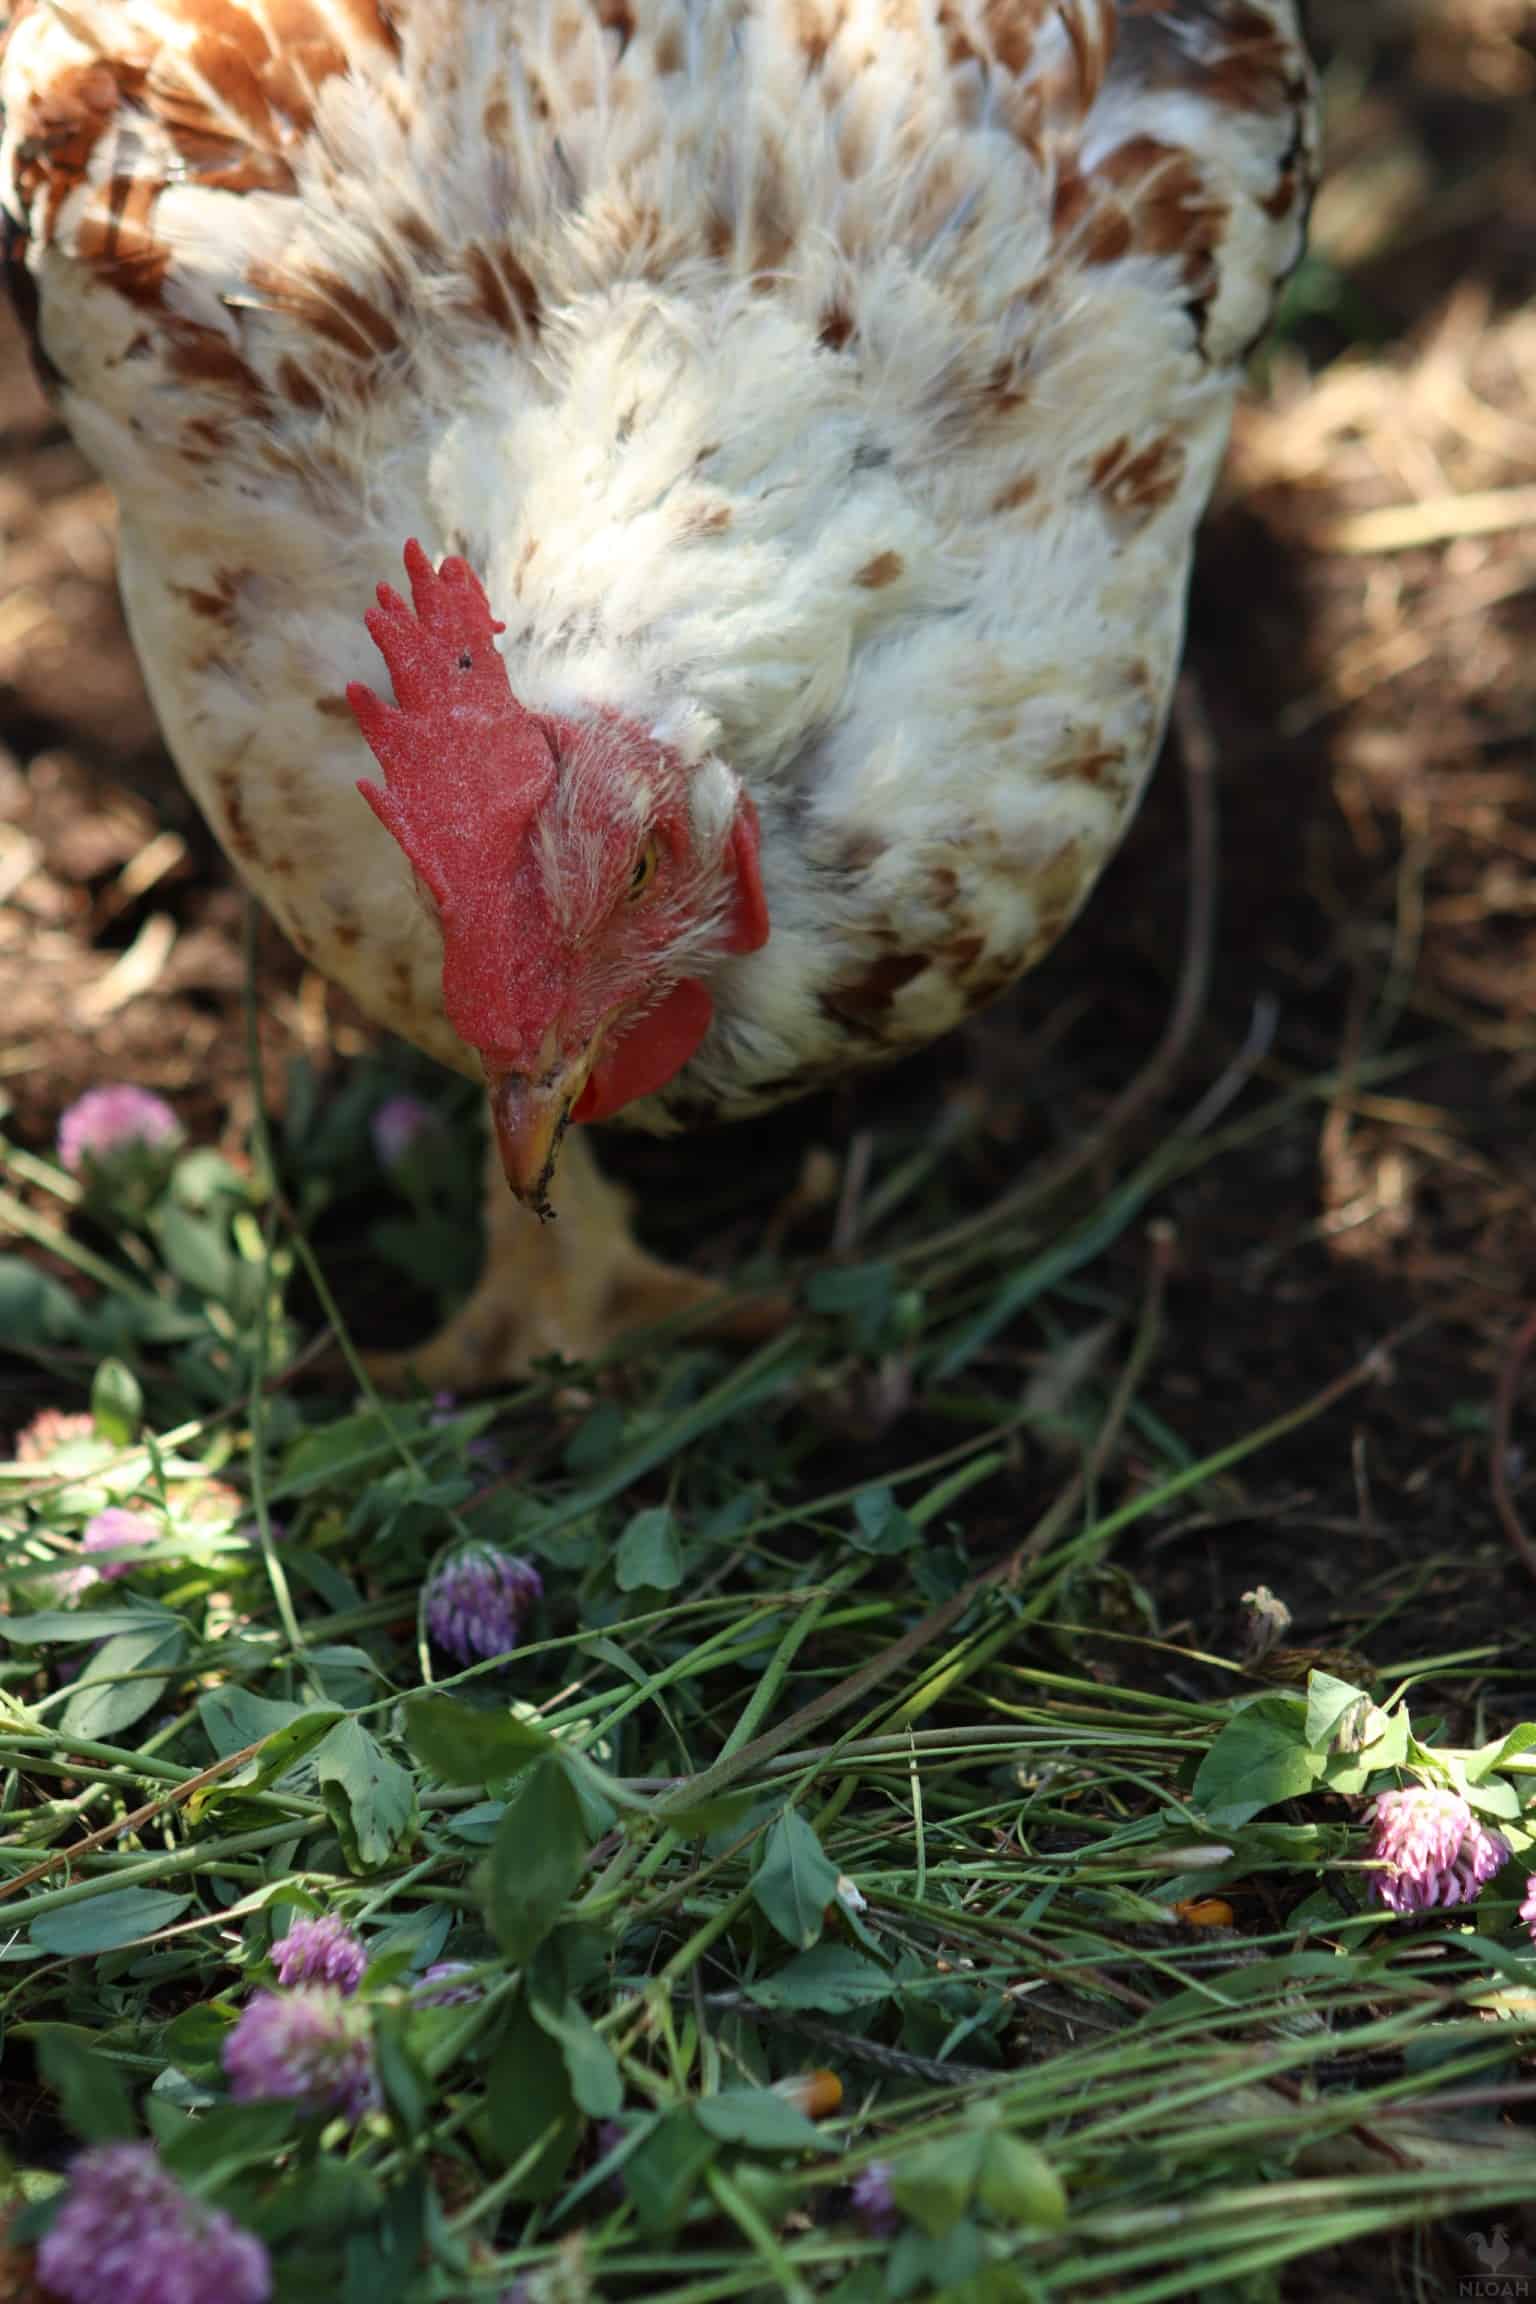 a hen eating clover